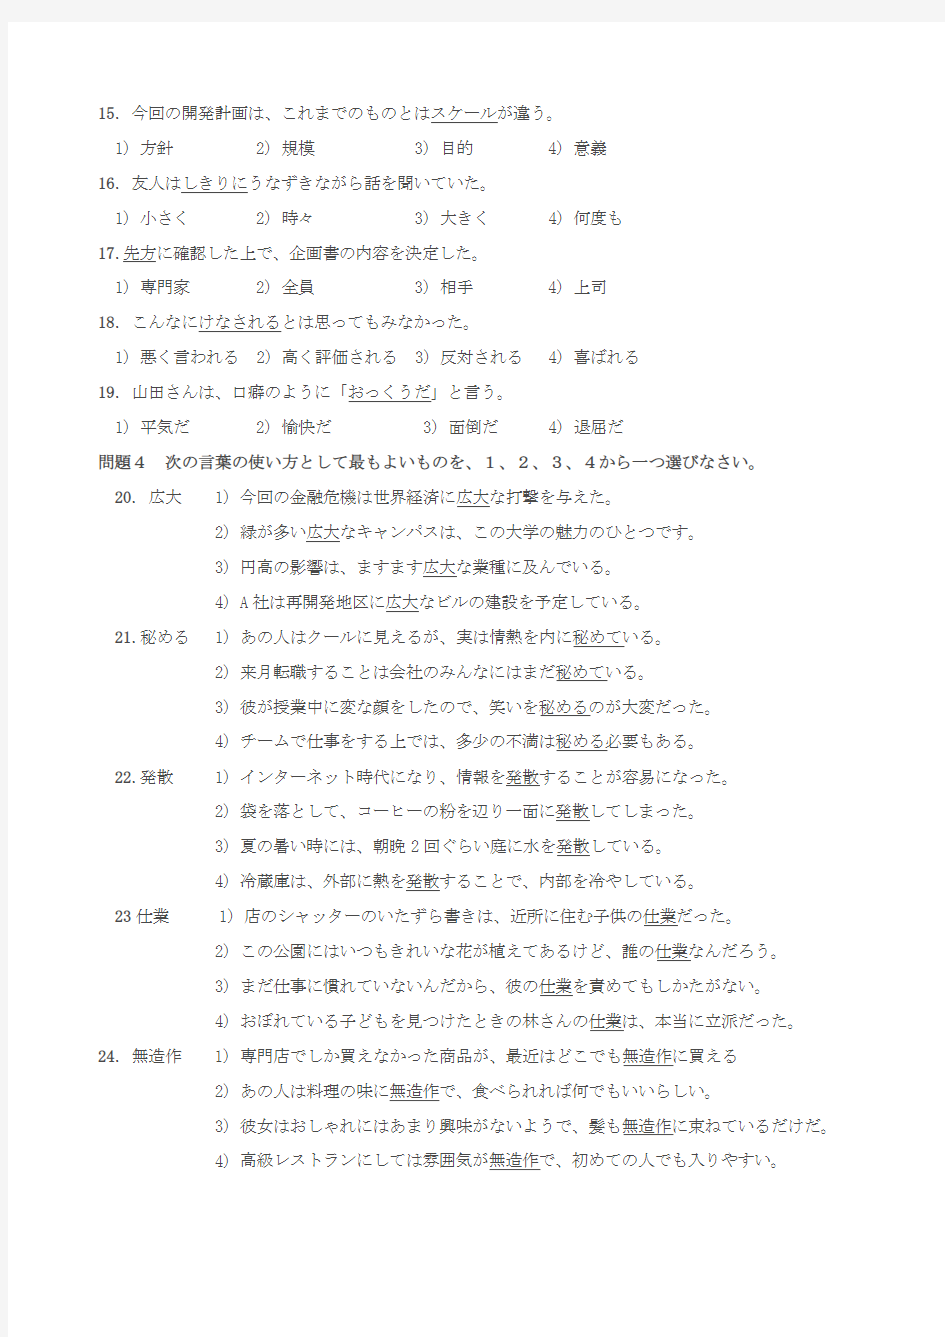 2012年12月国际日本语能力考试N1真题